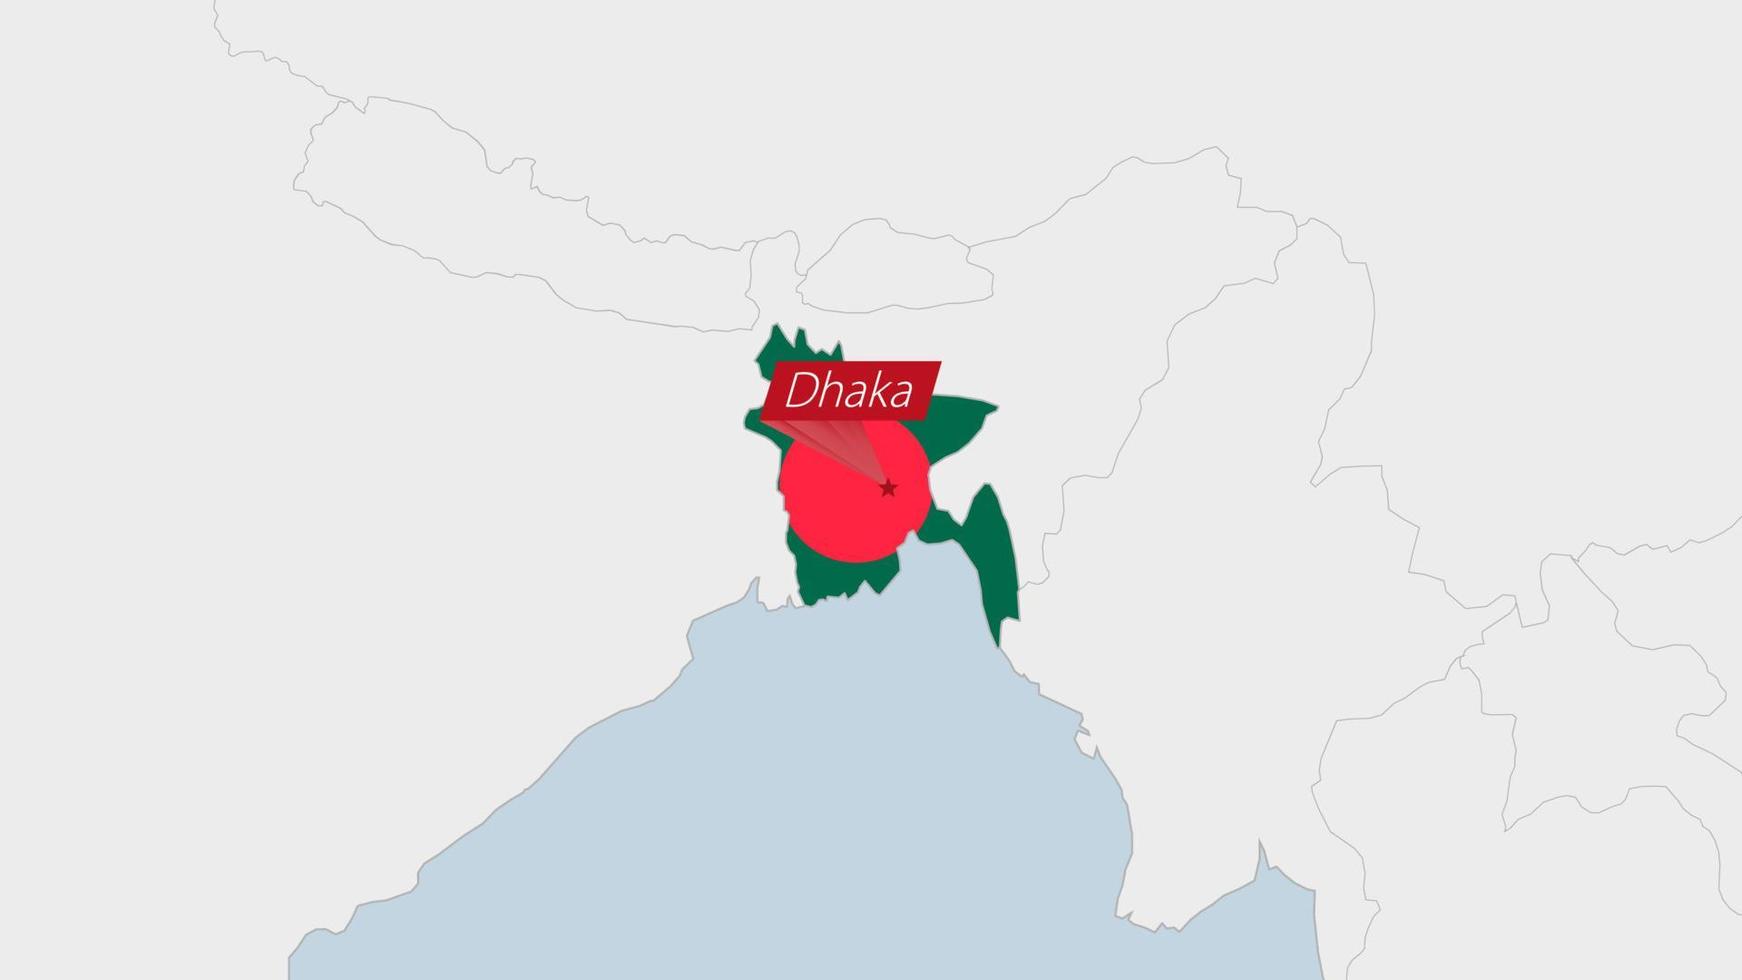 Bangladesh kaart gemarkeerd in Bangladesh vlag kleuren en pin van land hoofdstad dhaka. vector